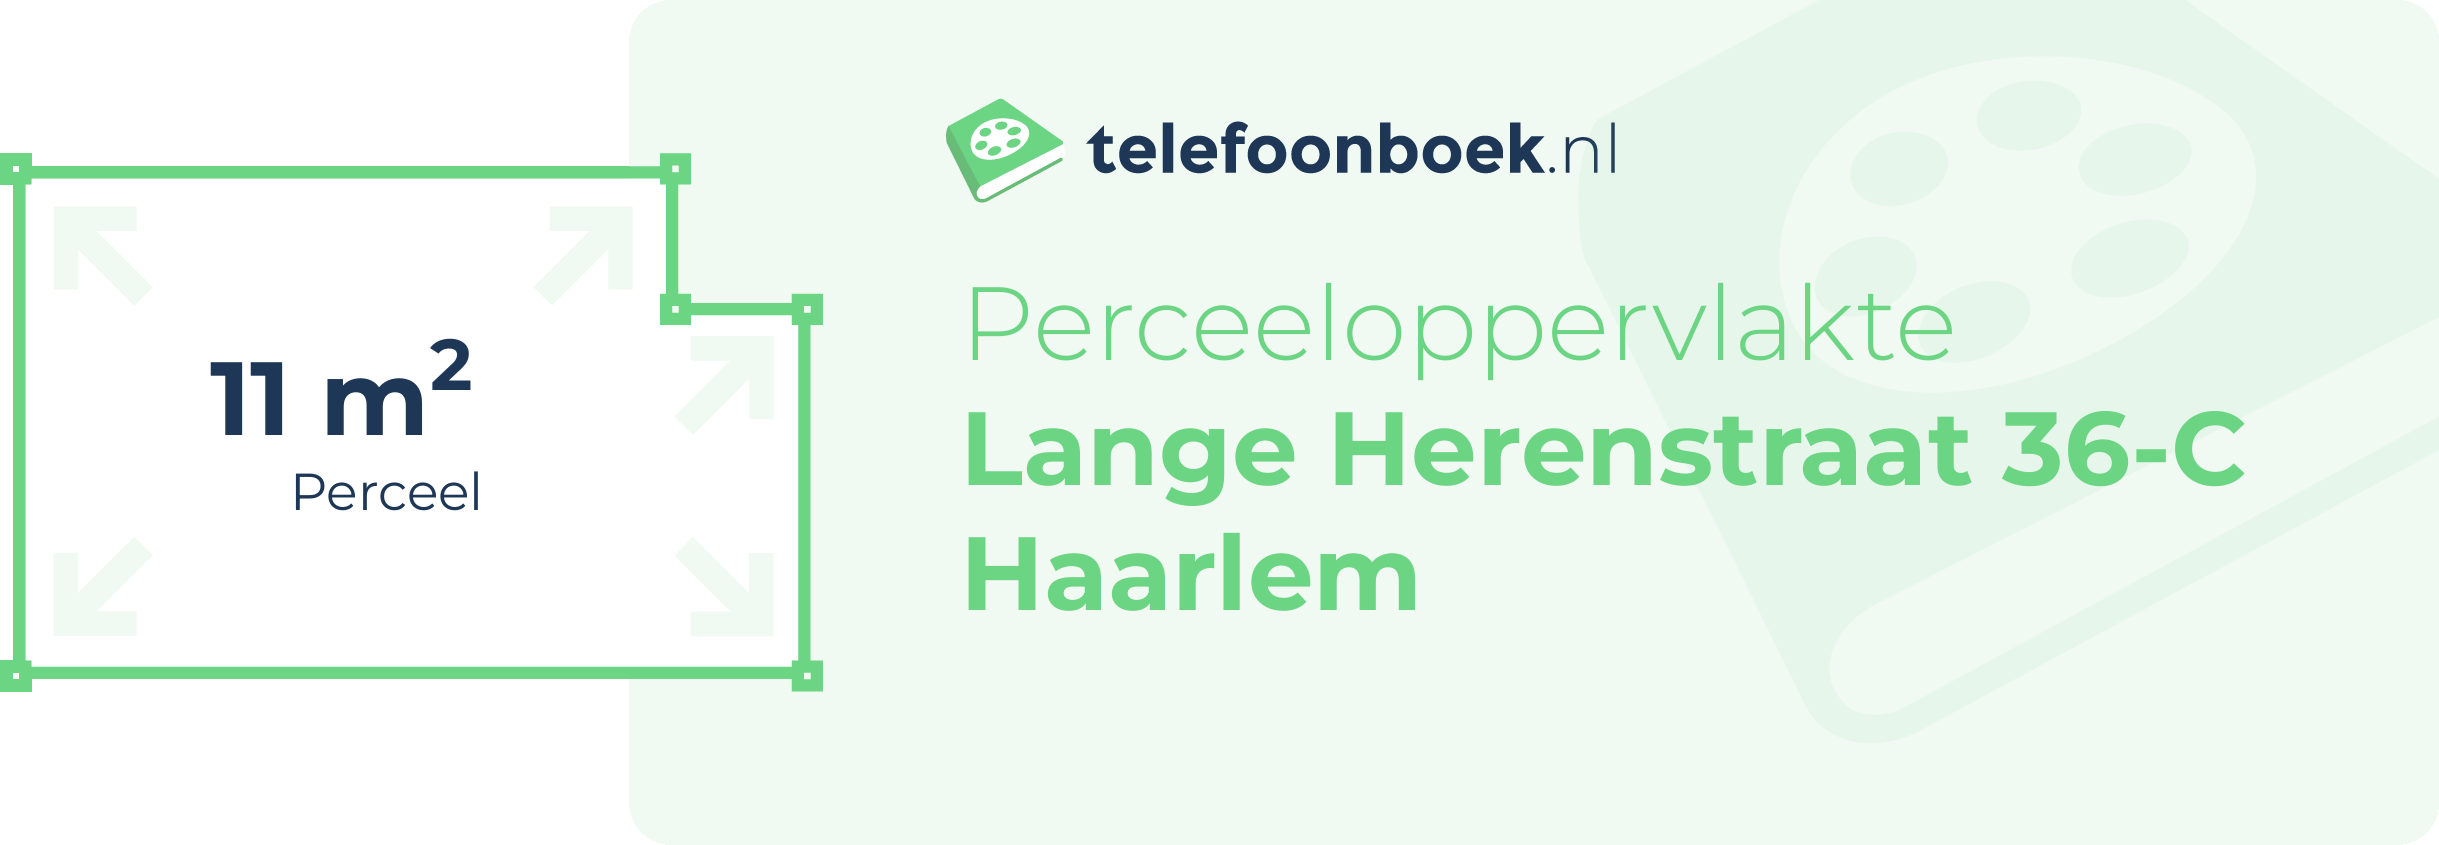 Perceeloppervlakte Lange Herenstraat 36-C Haarlem